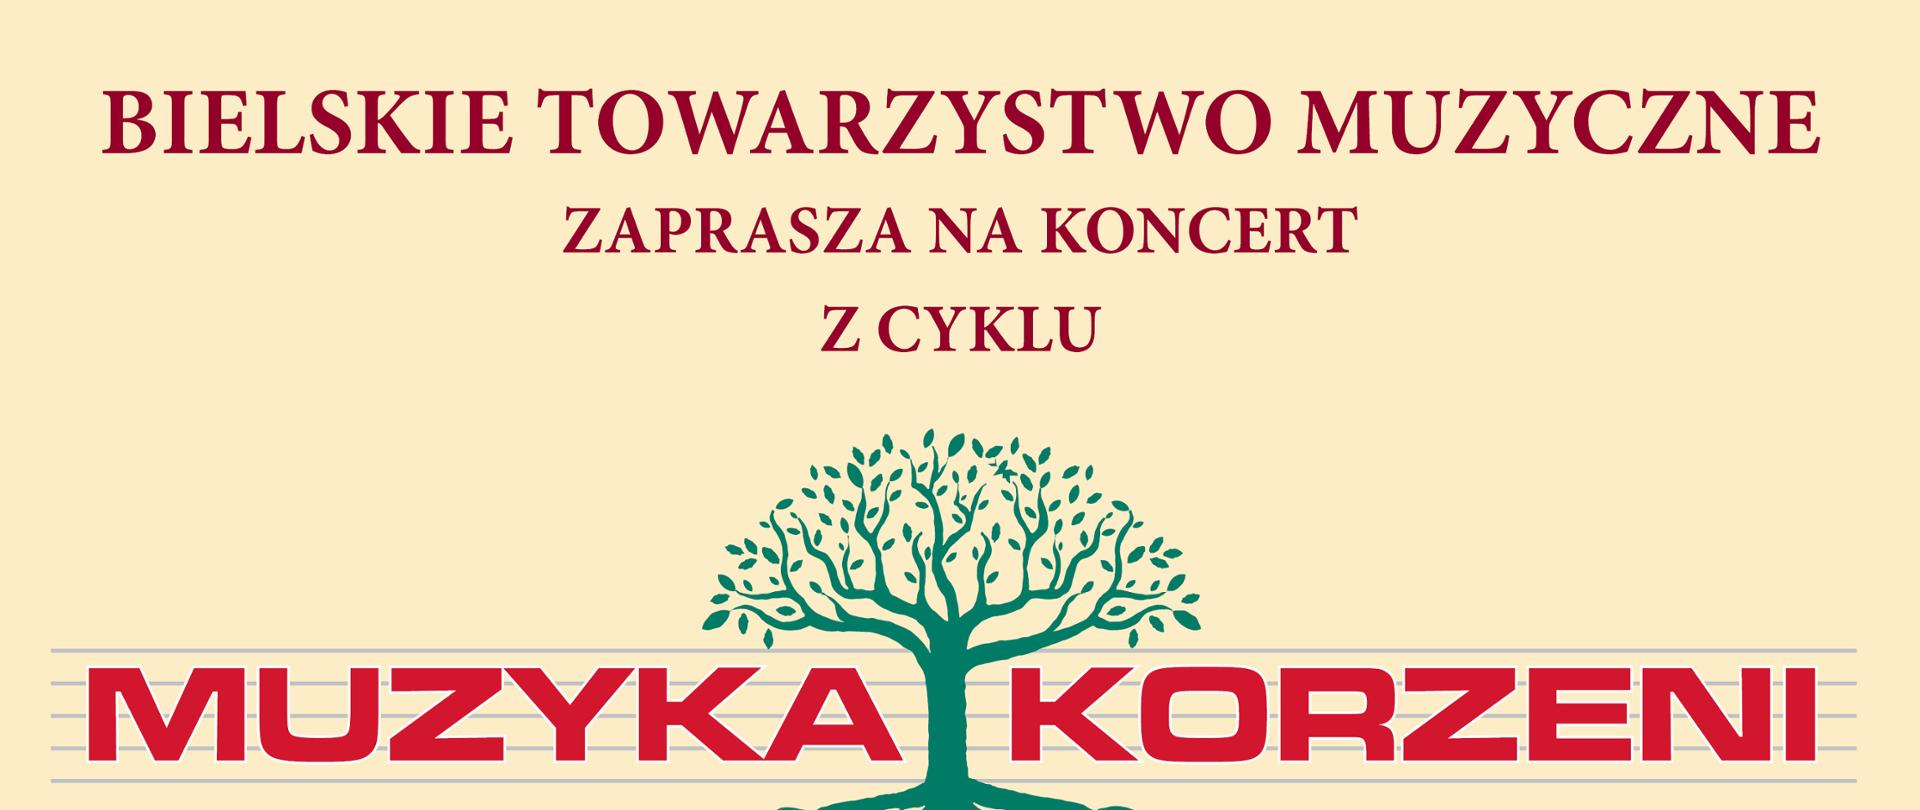 Plakat informacyjny dotyczący Koncertu "Muzyka Korzeni" odbywający się w dniu 15.06.2023 r. o godz. 10.00.